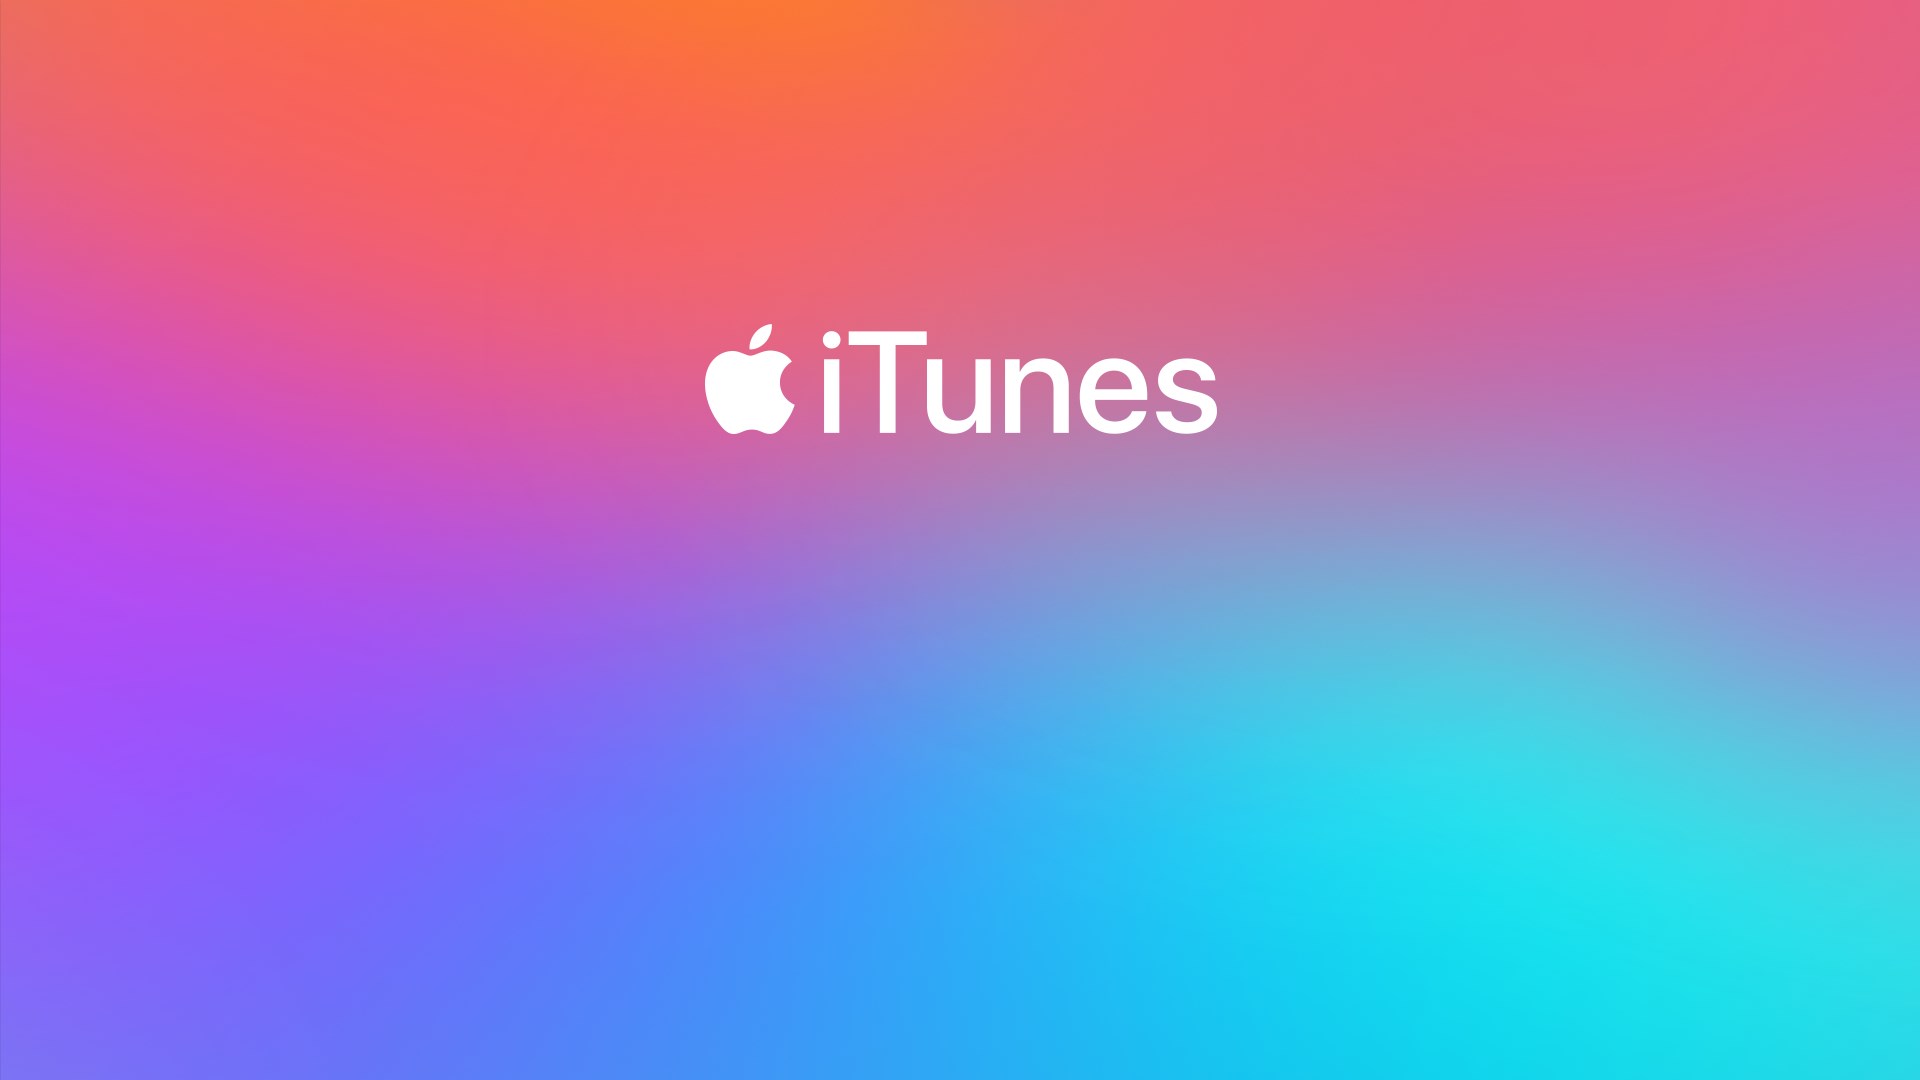 Kraj iTunesa predstavlja kraj cijele jedne glazbene ere